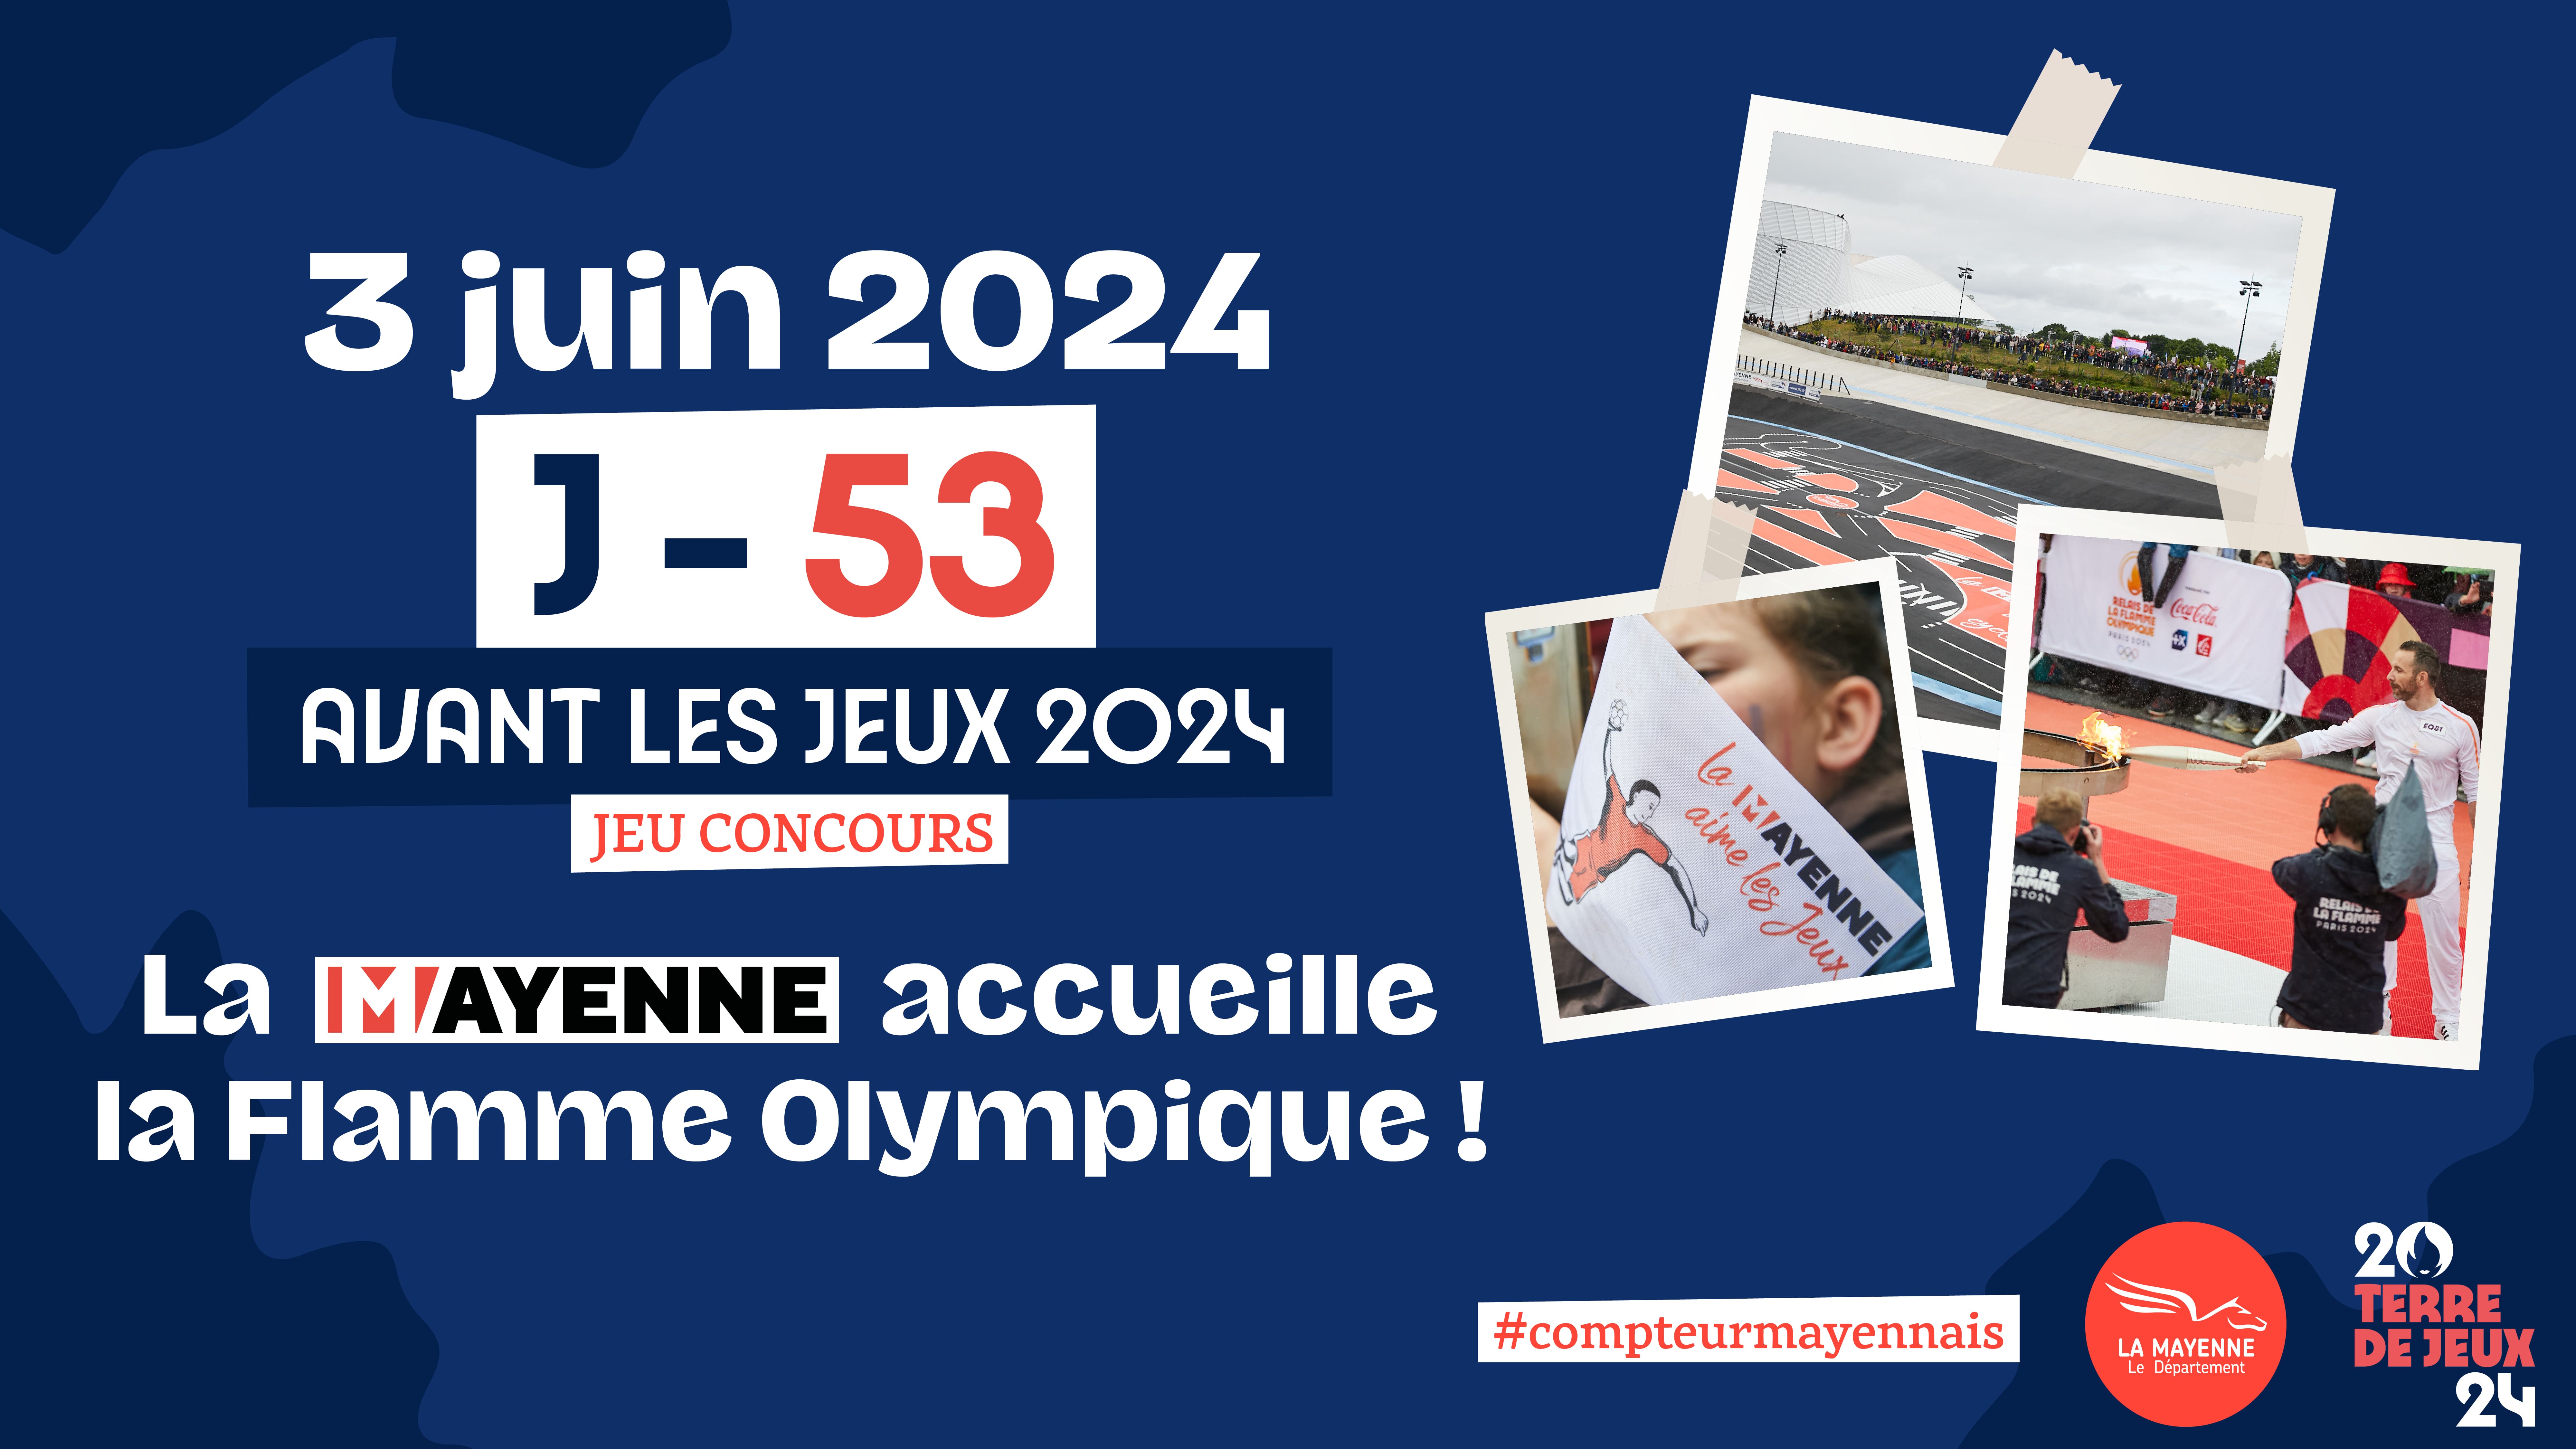 J-53 avant les JO 2024, « La Mayenne accueille la flamme olympique », ce lundi 3 juin !